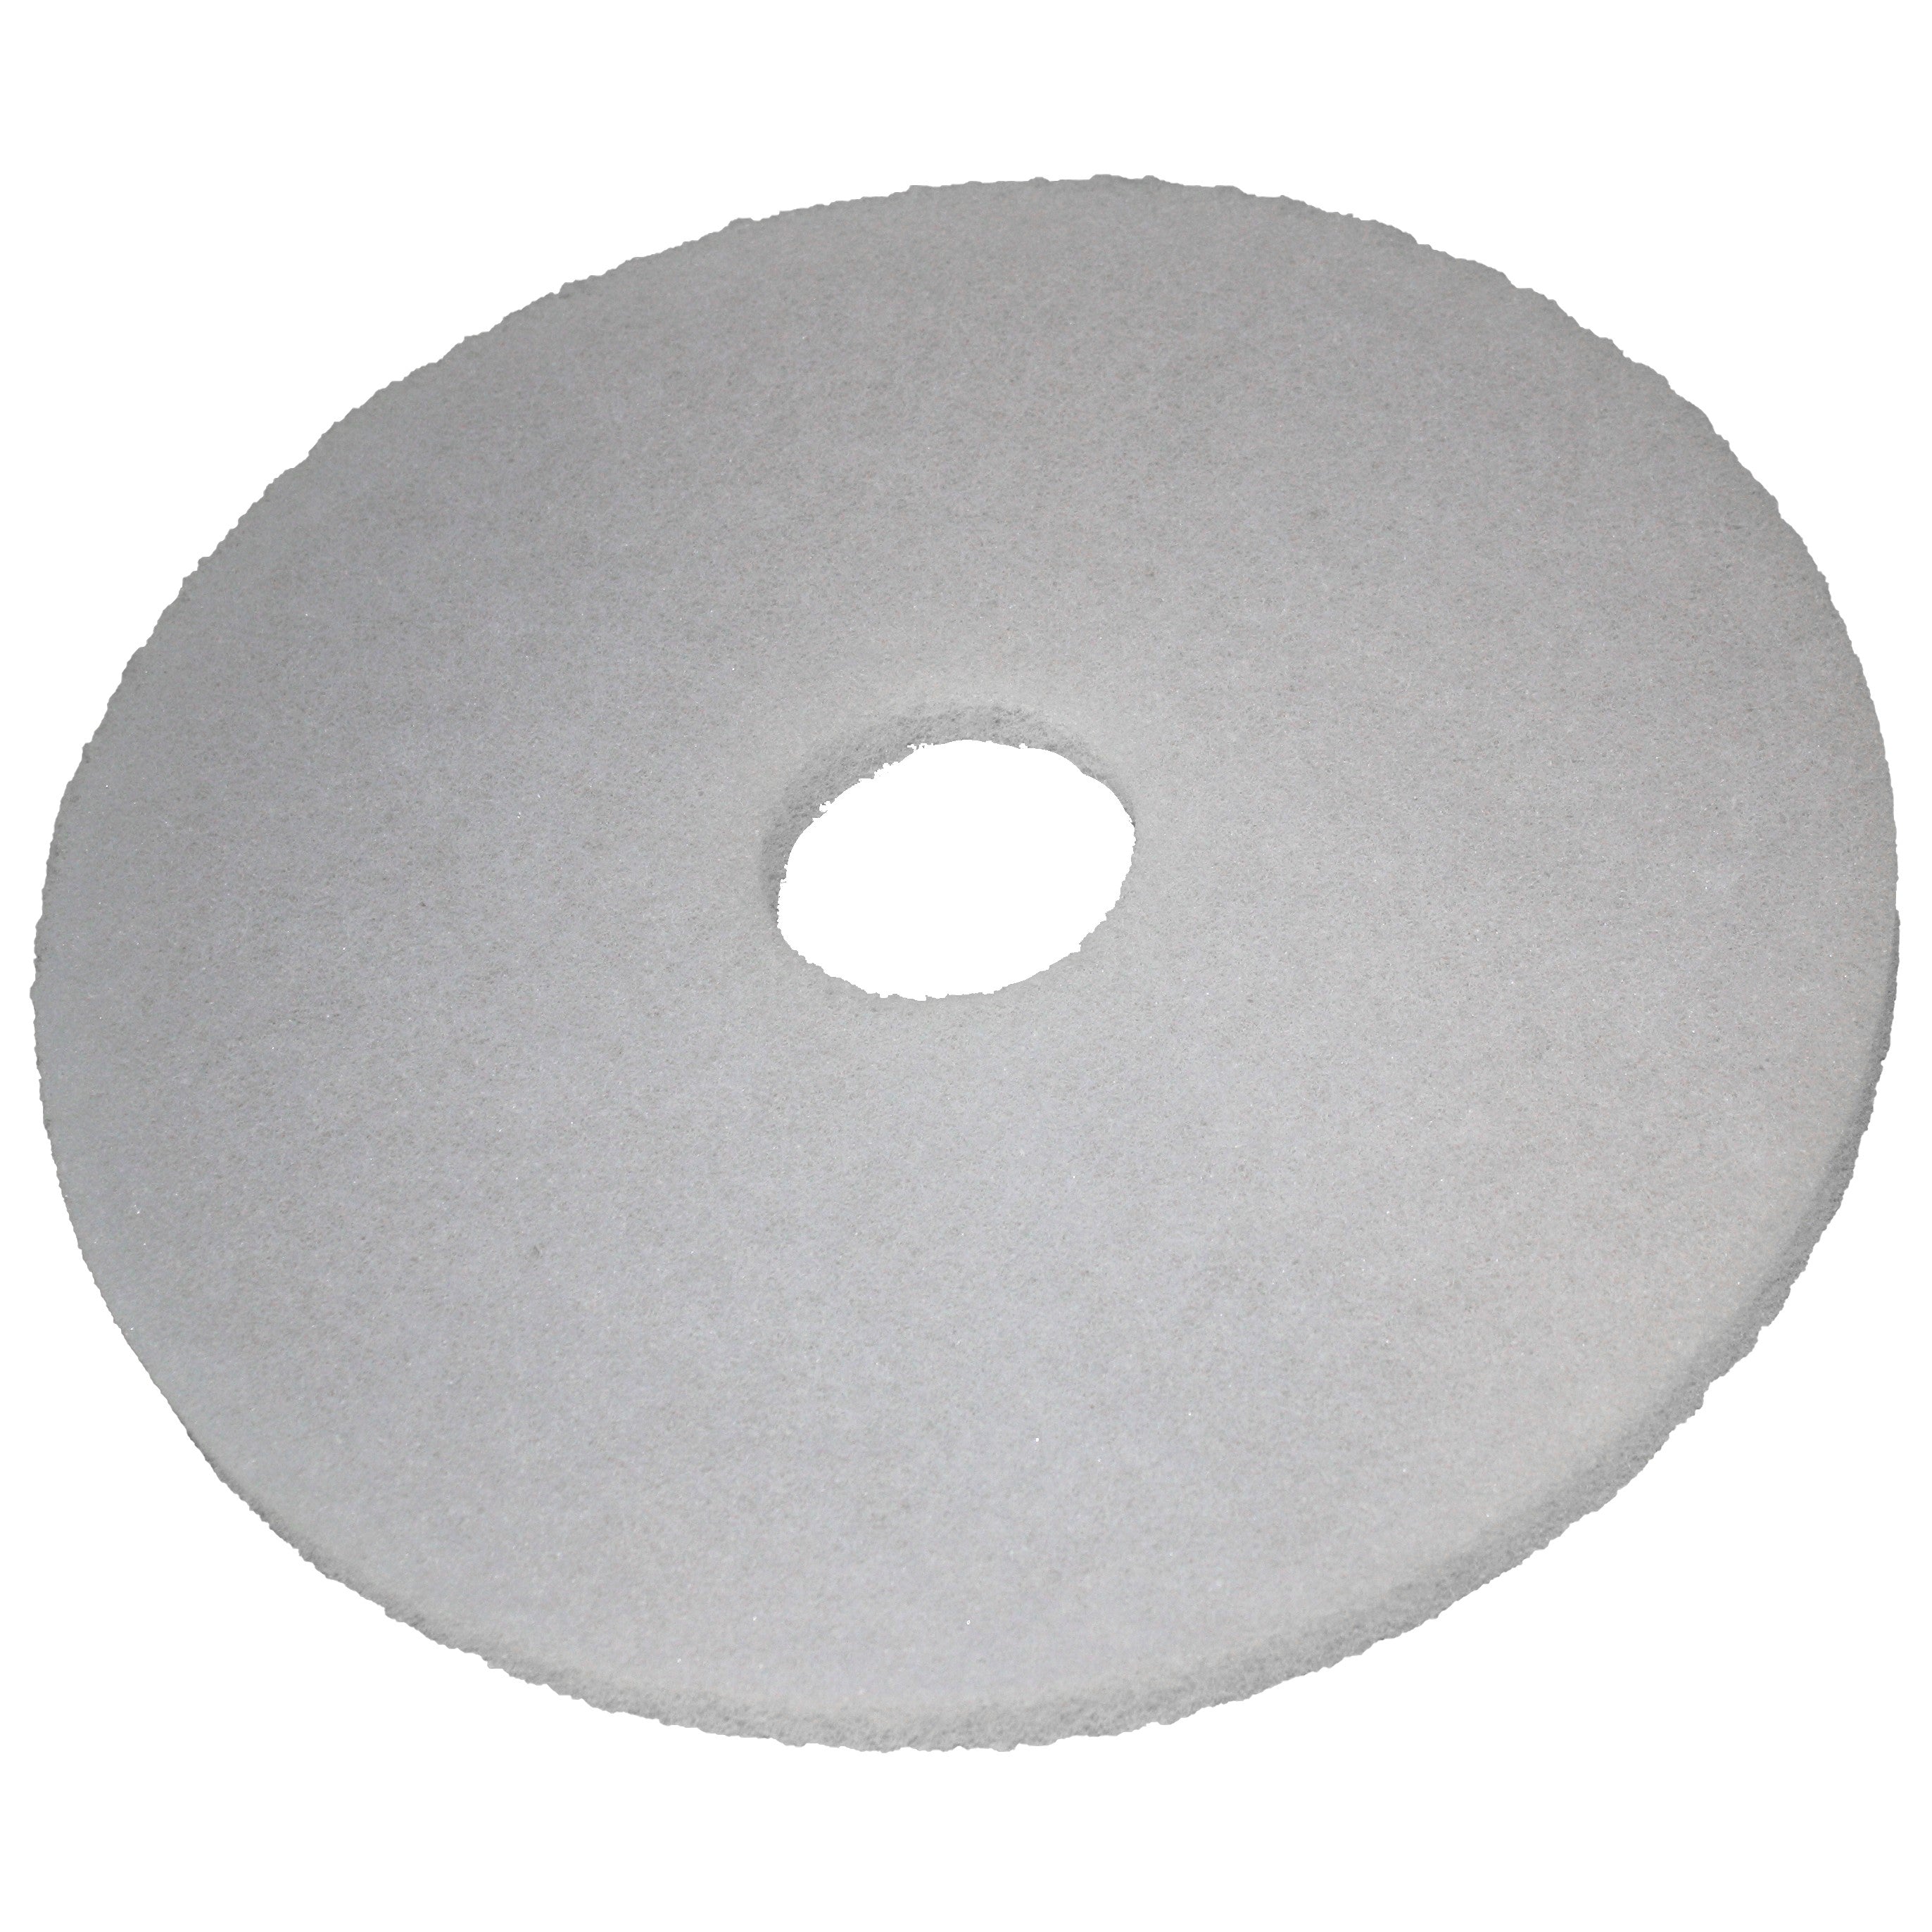 Pad blanc, Ø 305 mm, polyester